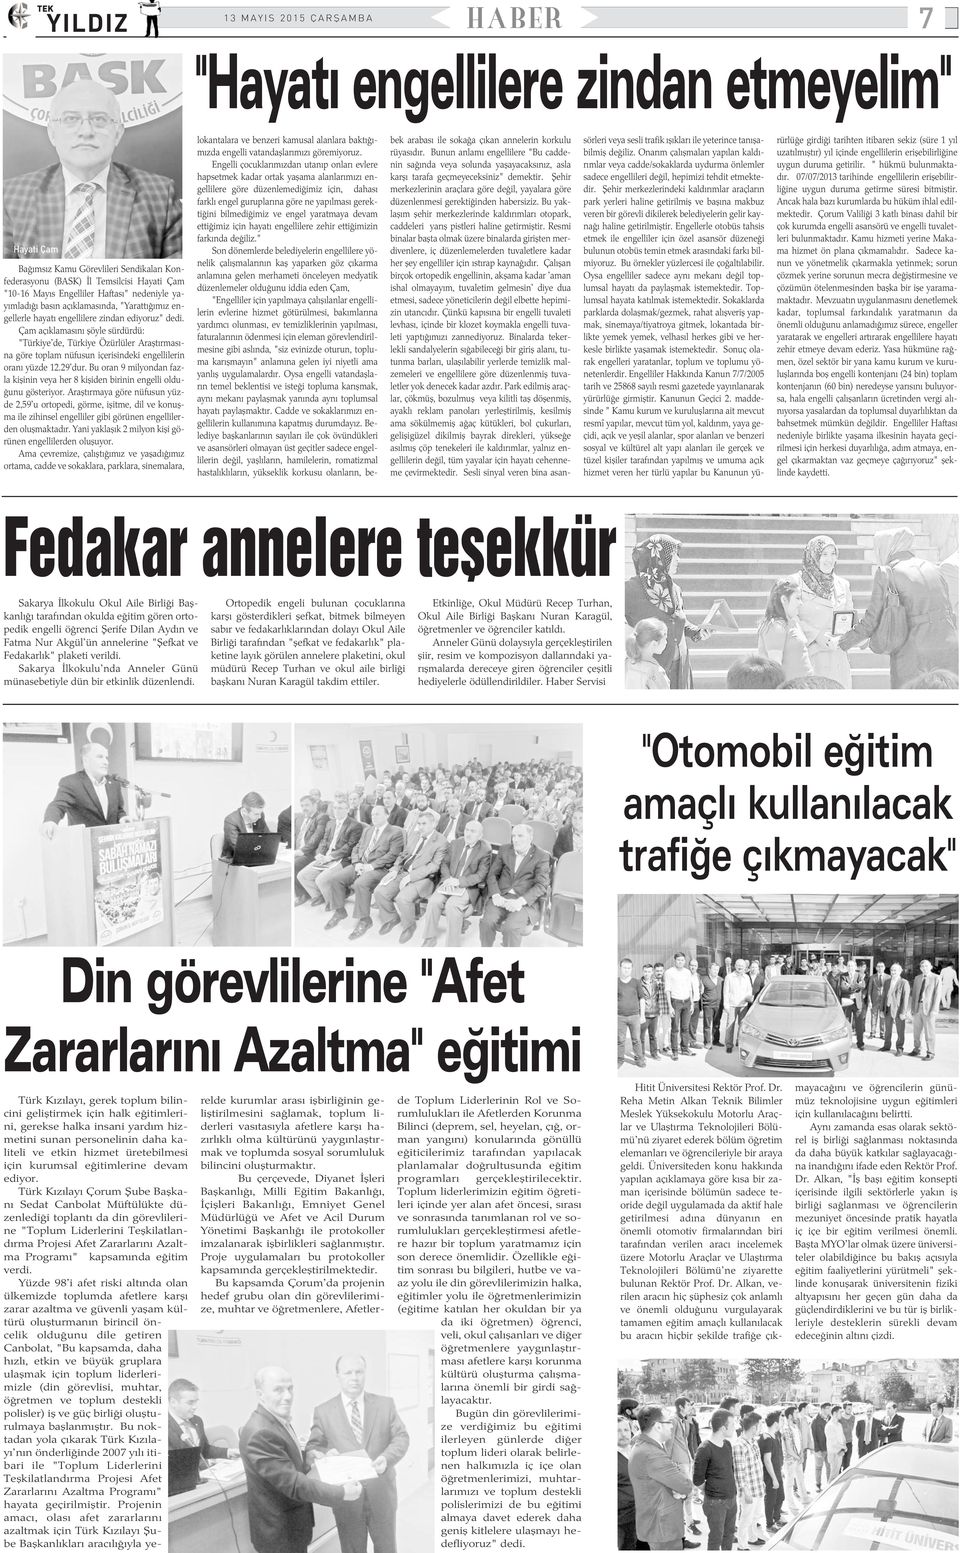 Çam açýklamasýný þöyle sürdürdü: "Türkiye'de, Türkiye Özürlüler Araþtýrmasýna göre toplam nüfusun içerisindeki engellilerin oraný yüzde 12.29'dur.